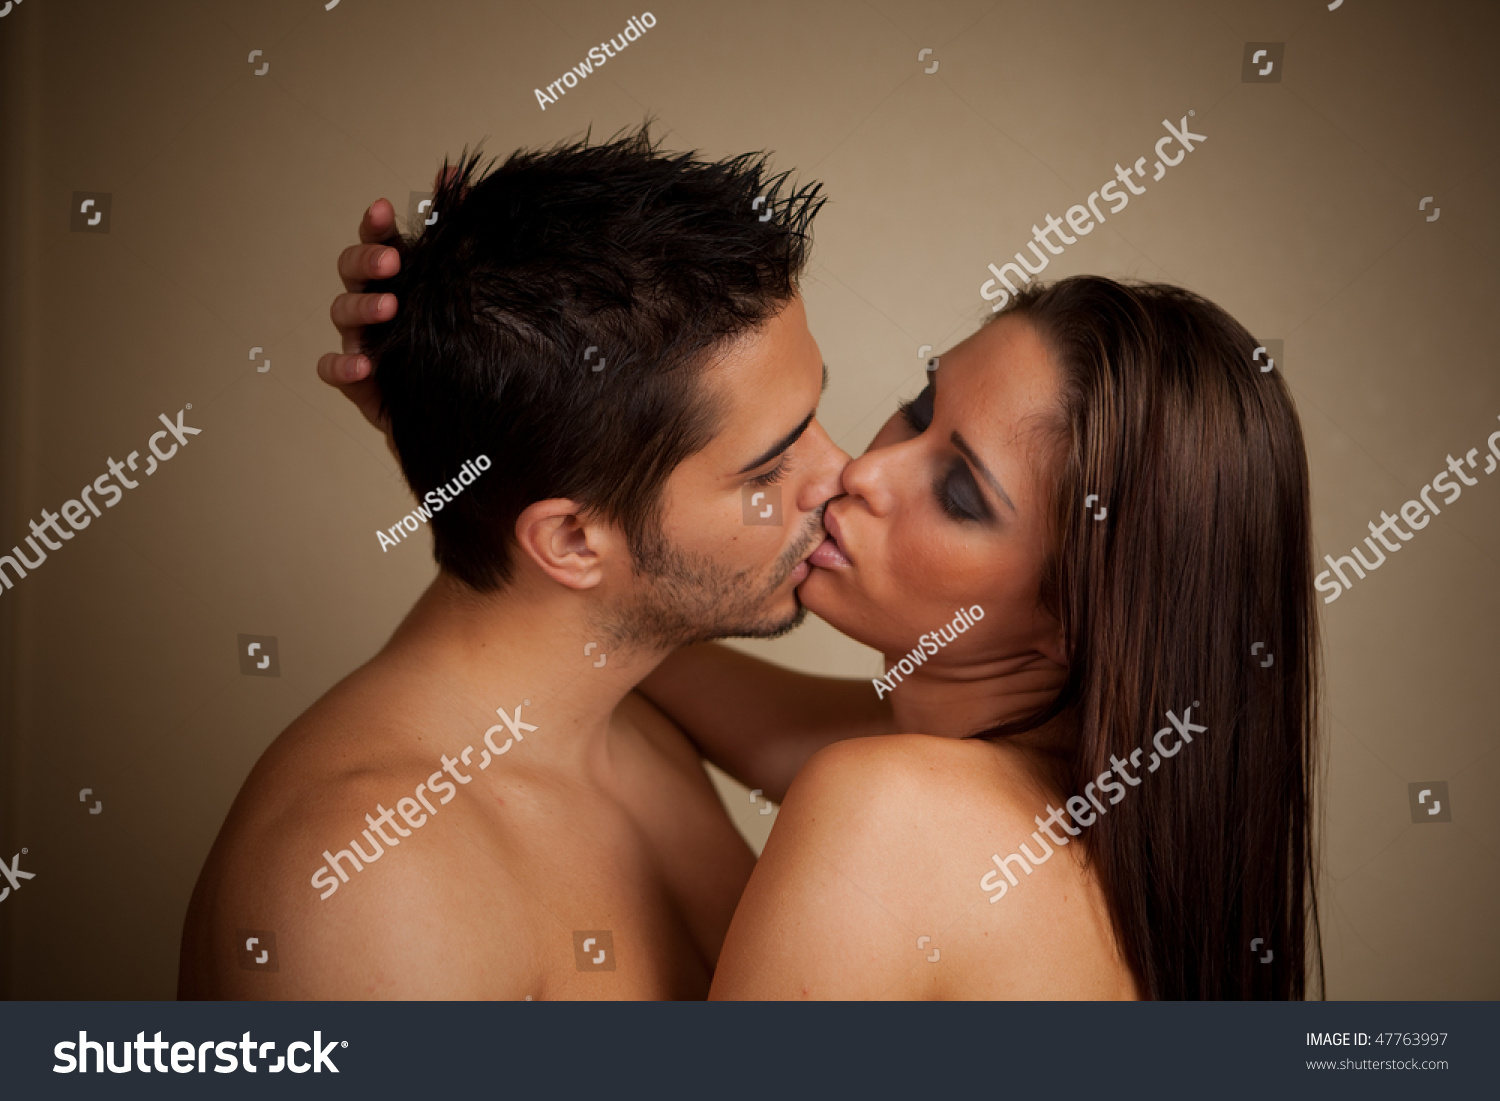 моя девушка целуется с другими парнями измена ли это фото 114